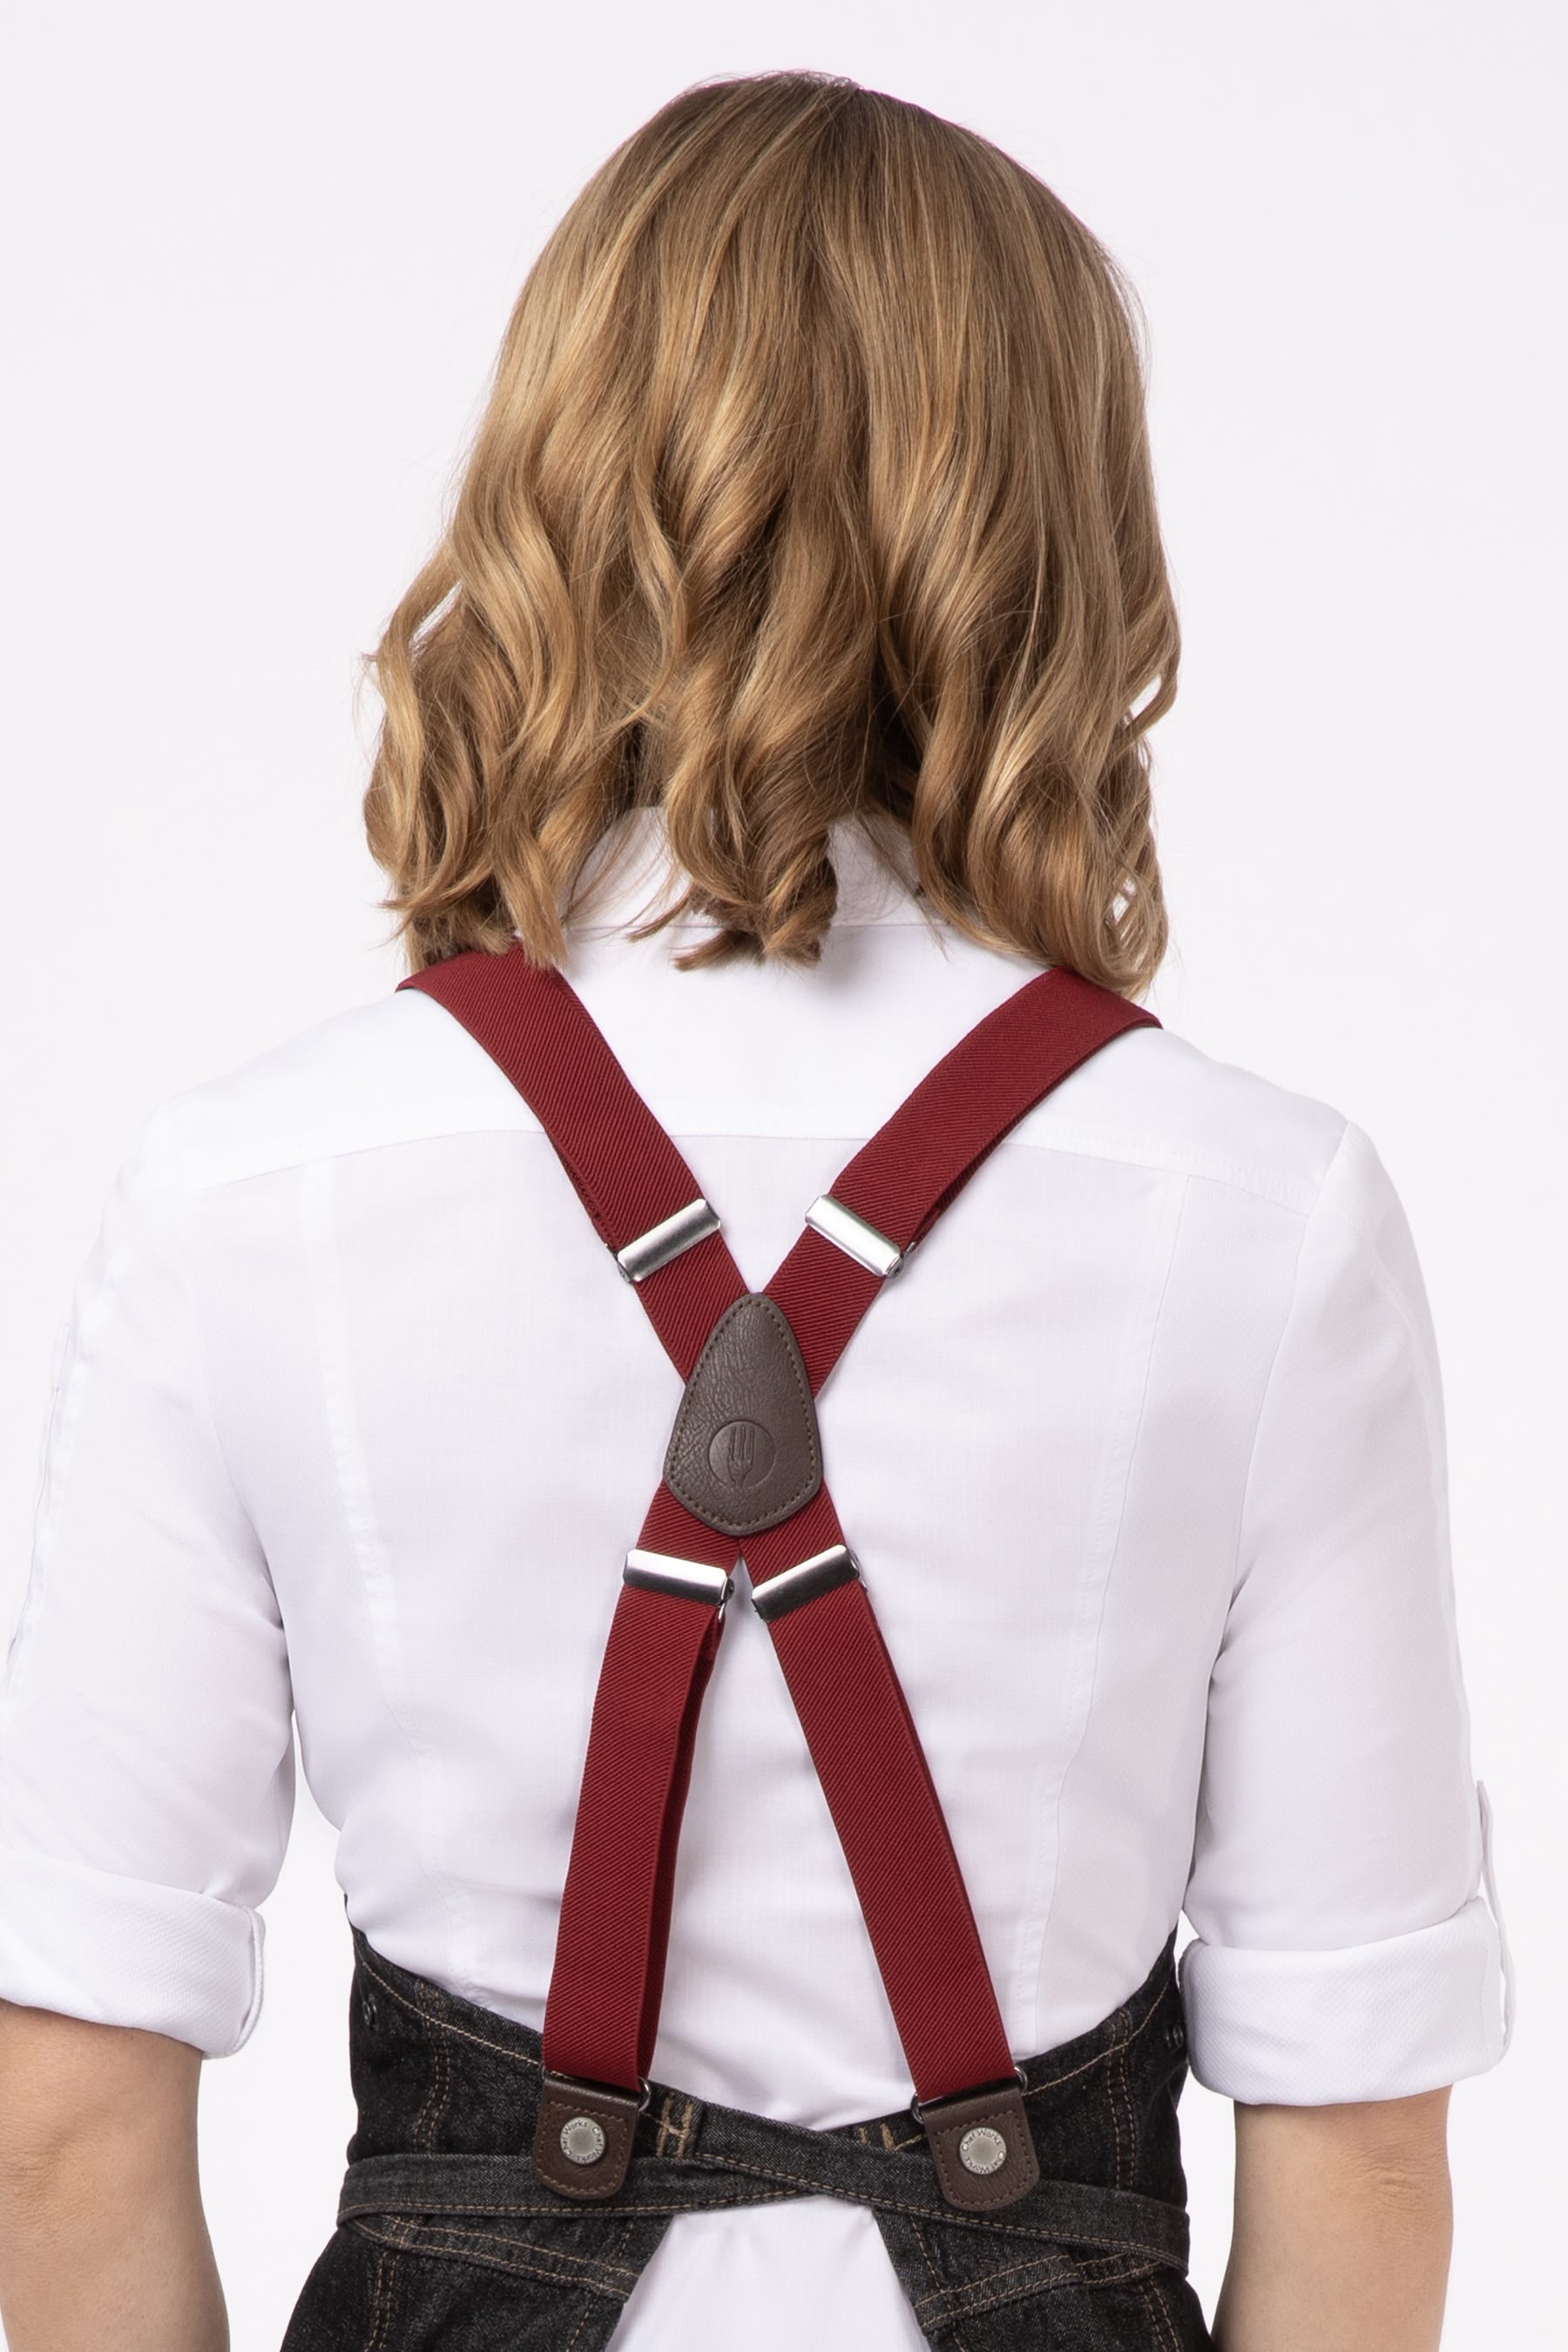 Apron Suspenders